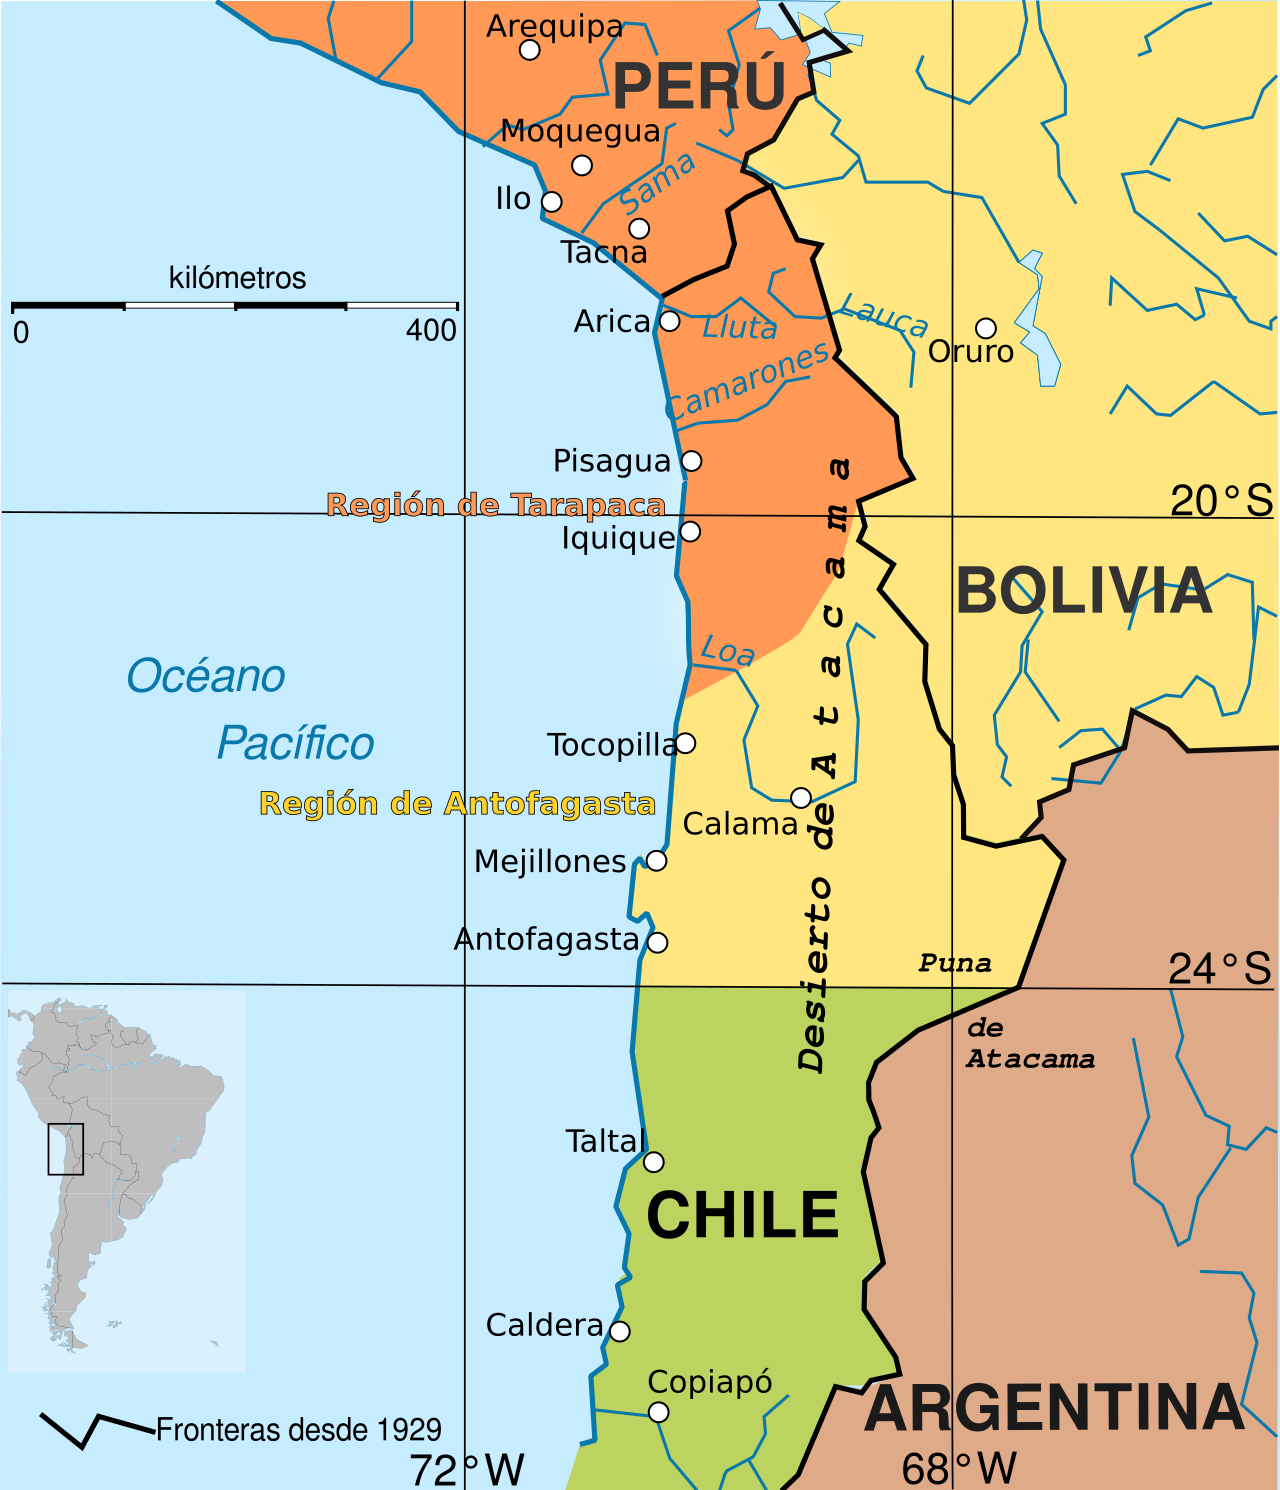 Demarcación esquemática de los territorios bolivianos, peruanos y chilenos antes del inicio de la guerra. La línea negra continua señala las fronteras desde 1929, tras la firma del Tratado de Lima. 